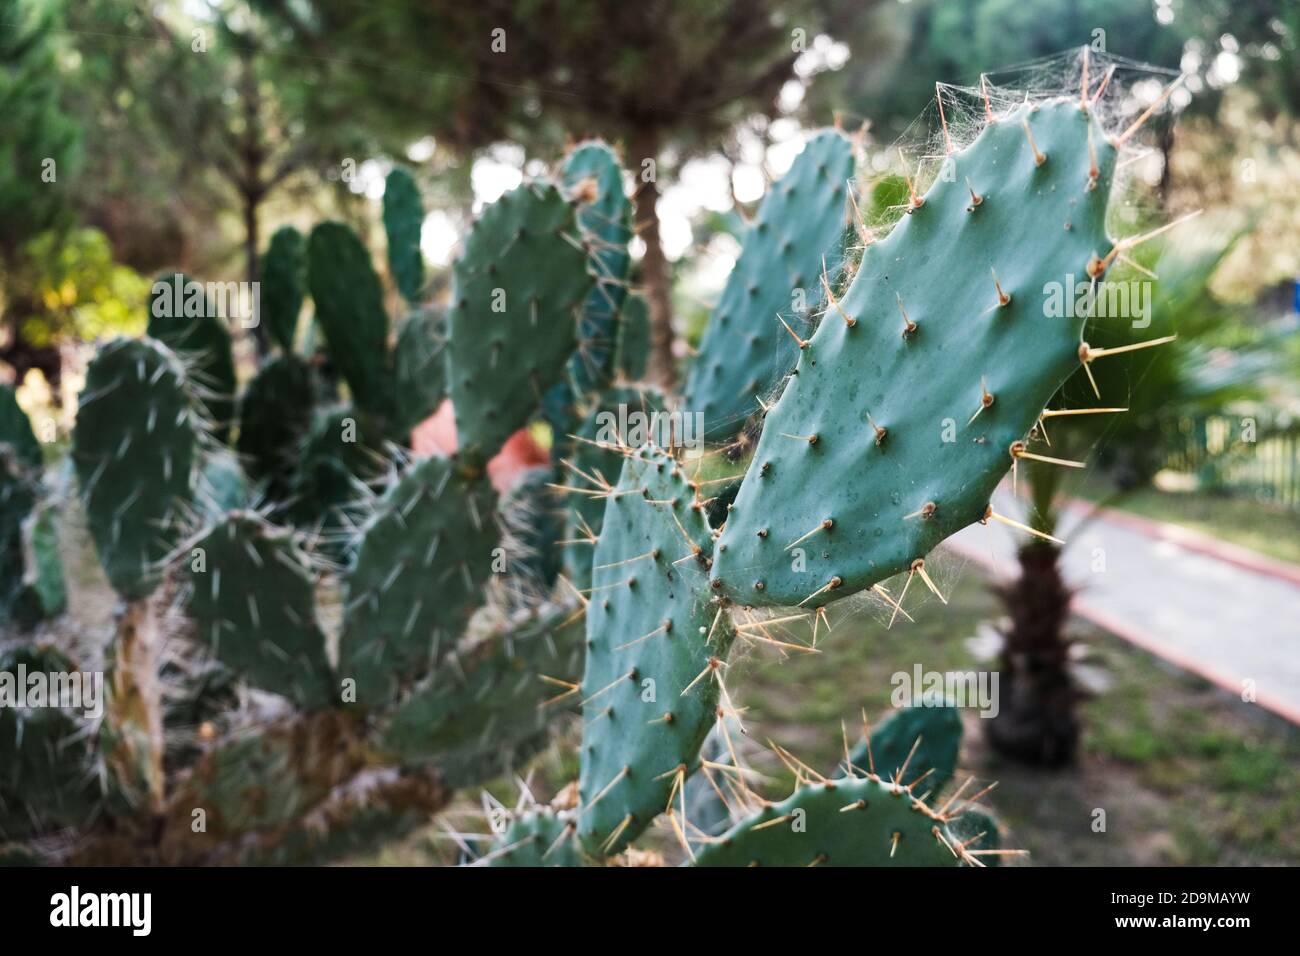 Campo de cactus de pera espinosa ciego. Vista de cerca de hojas de cactus verdes con espinas afiladas. Hermoso fondo tropical. Cactuses naturales en crecimiento al aire libre Foto de stock